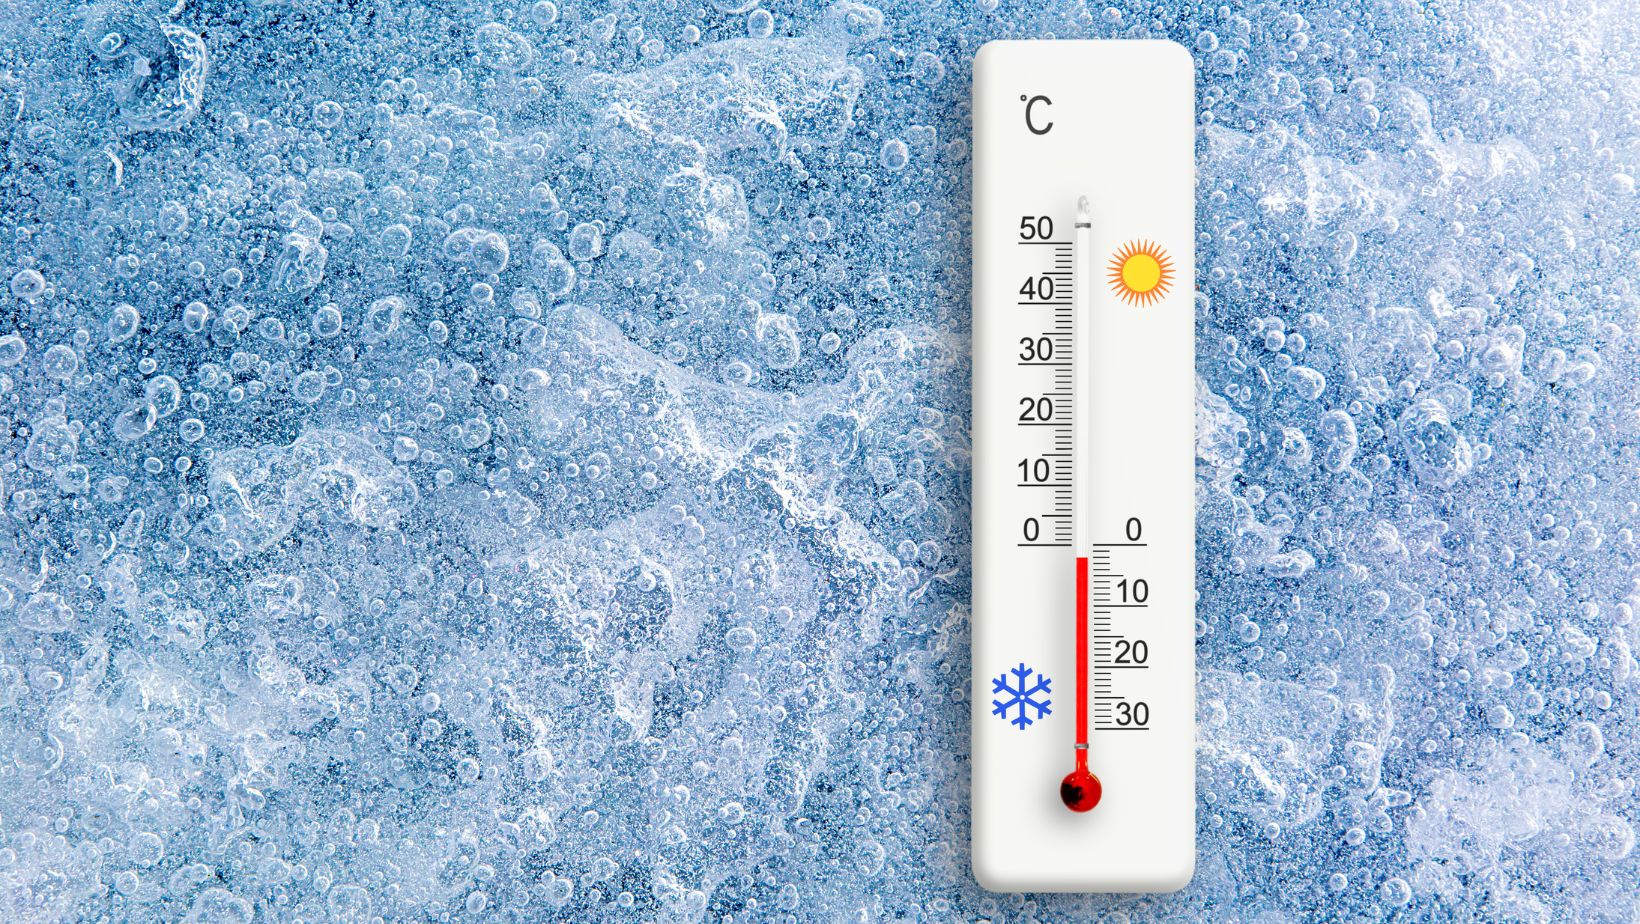 ketones can evaporate in cooler temperatures